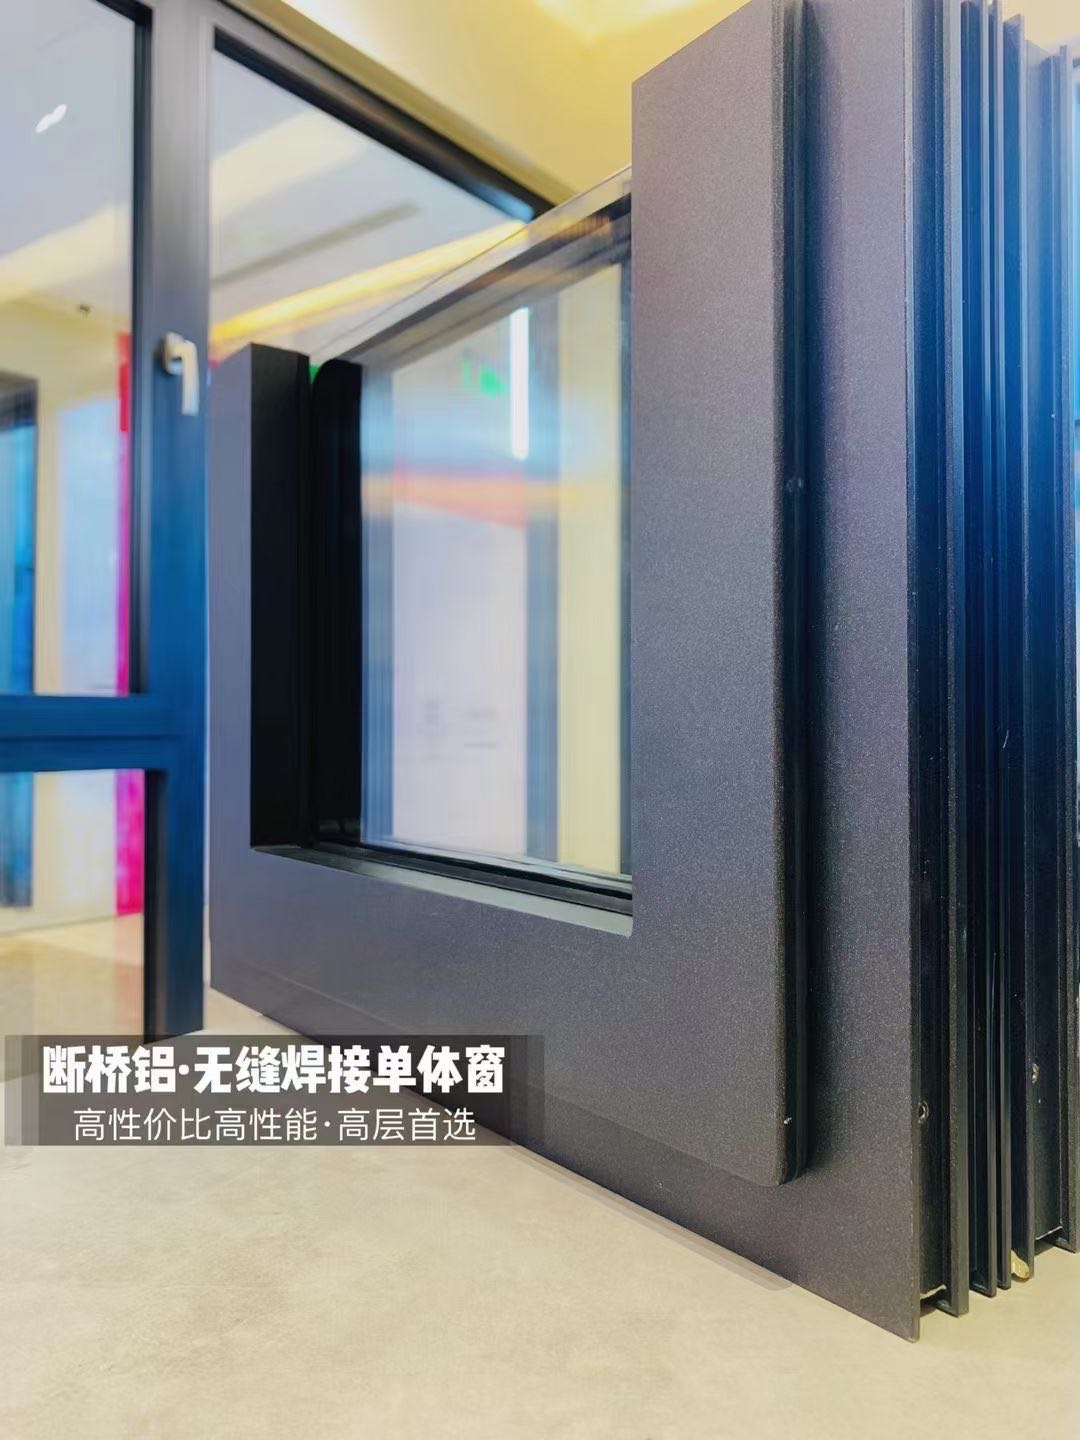 耐腐蚀好 铝包木78系列窗  无缝焊接 洛克门窗 78系列无缝焊接系统窗